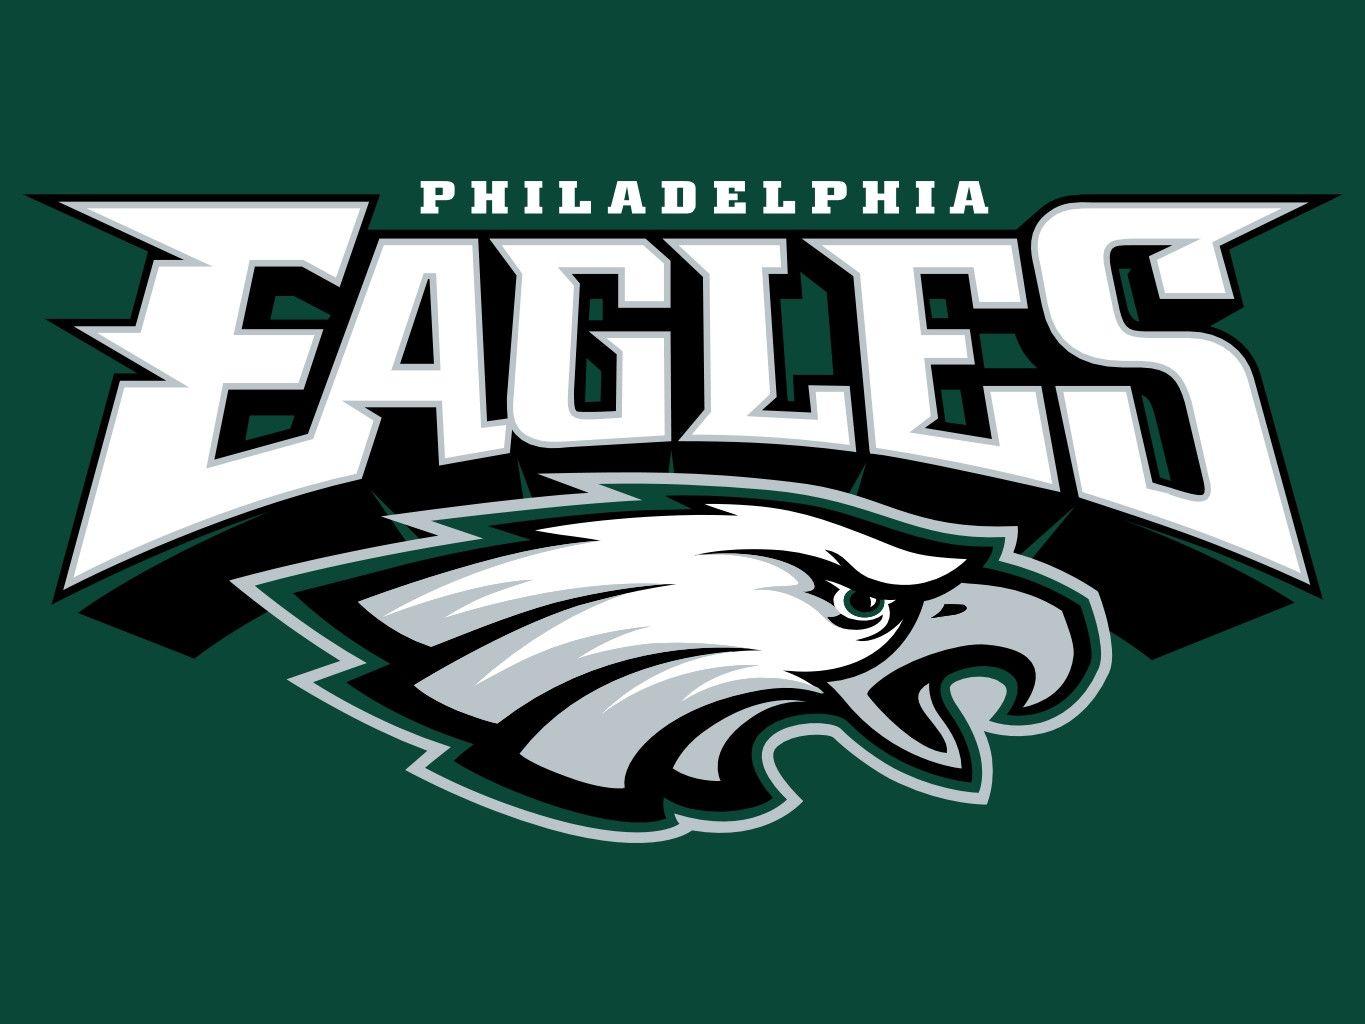 Philadelphia Eagles HD Wallpapers Free Download  PixelsTalkNet